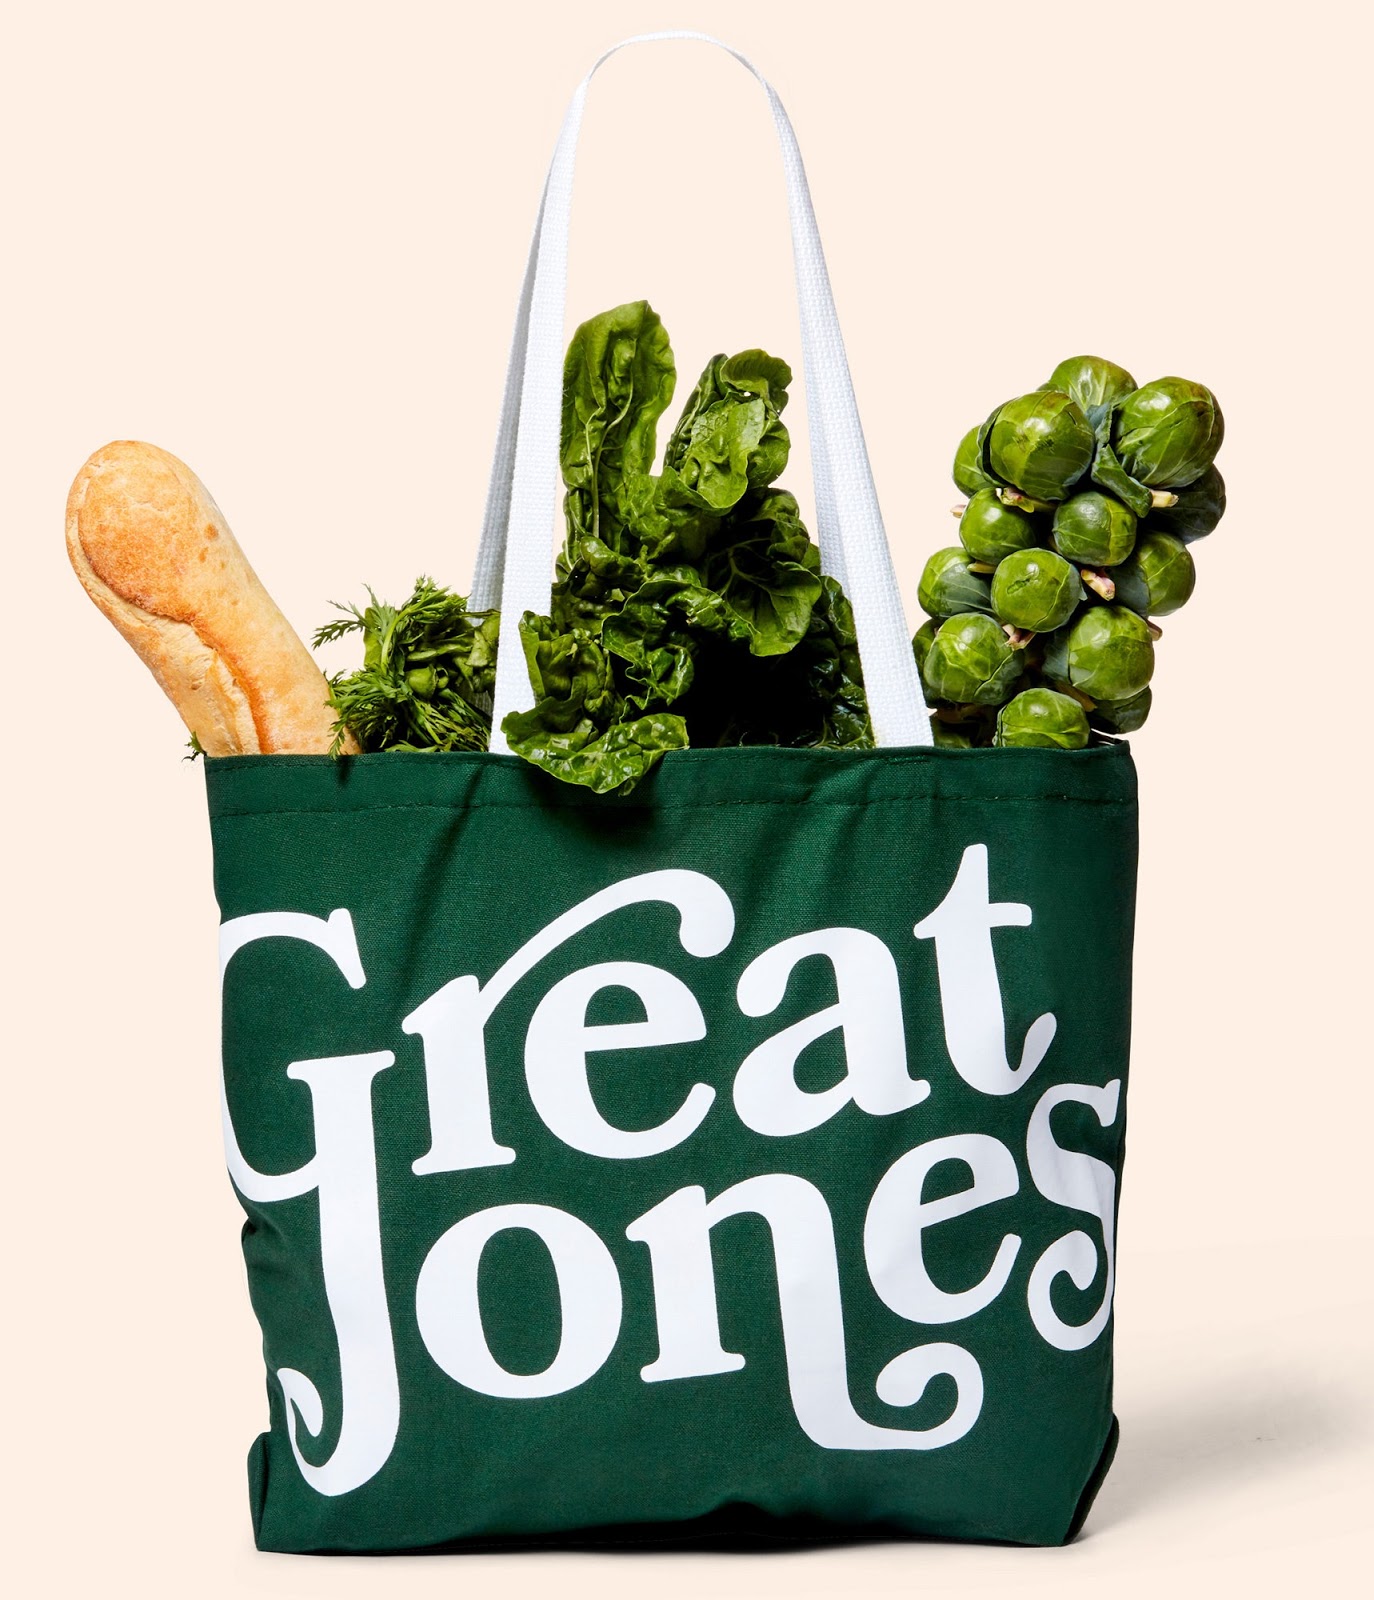 Great Jones锅具品牌形象设计